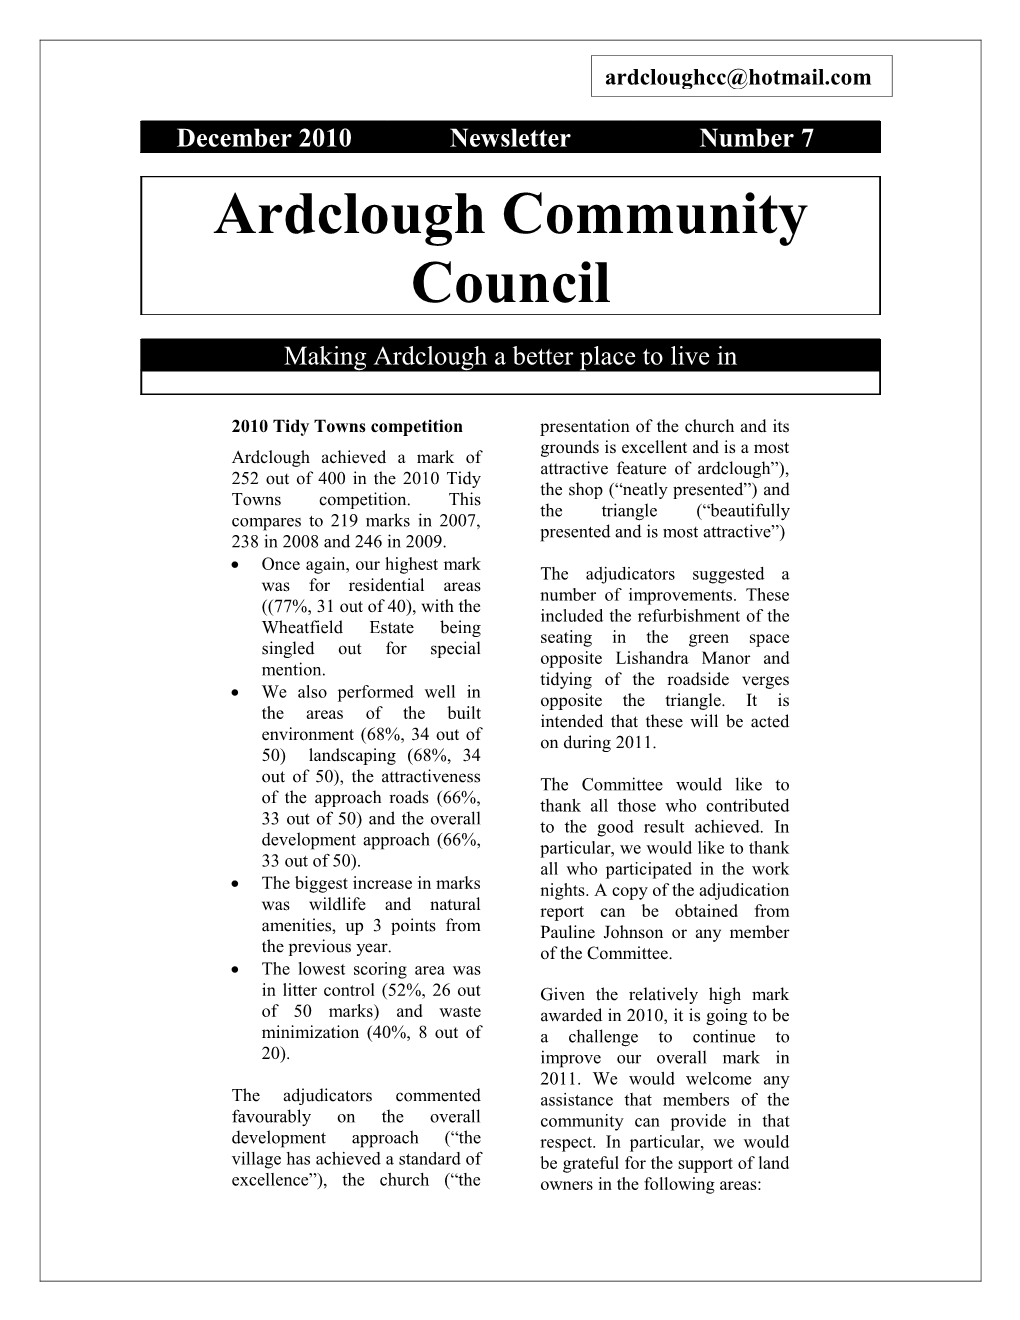 Ardclough Community Council